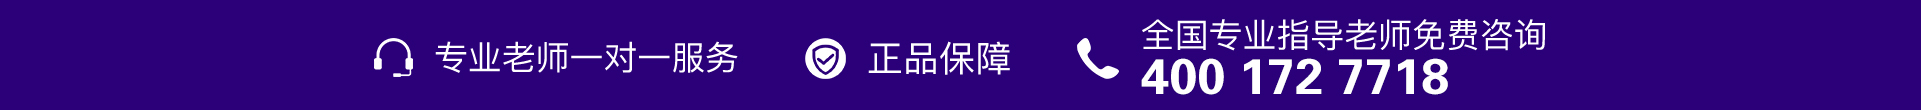 紫色电话-banner图下方-PC - 副本 (6).jpg